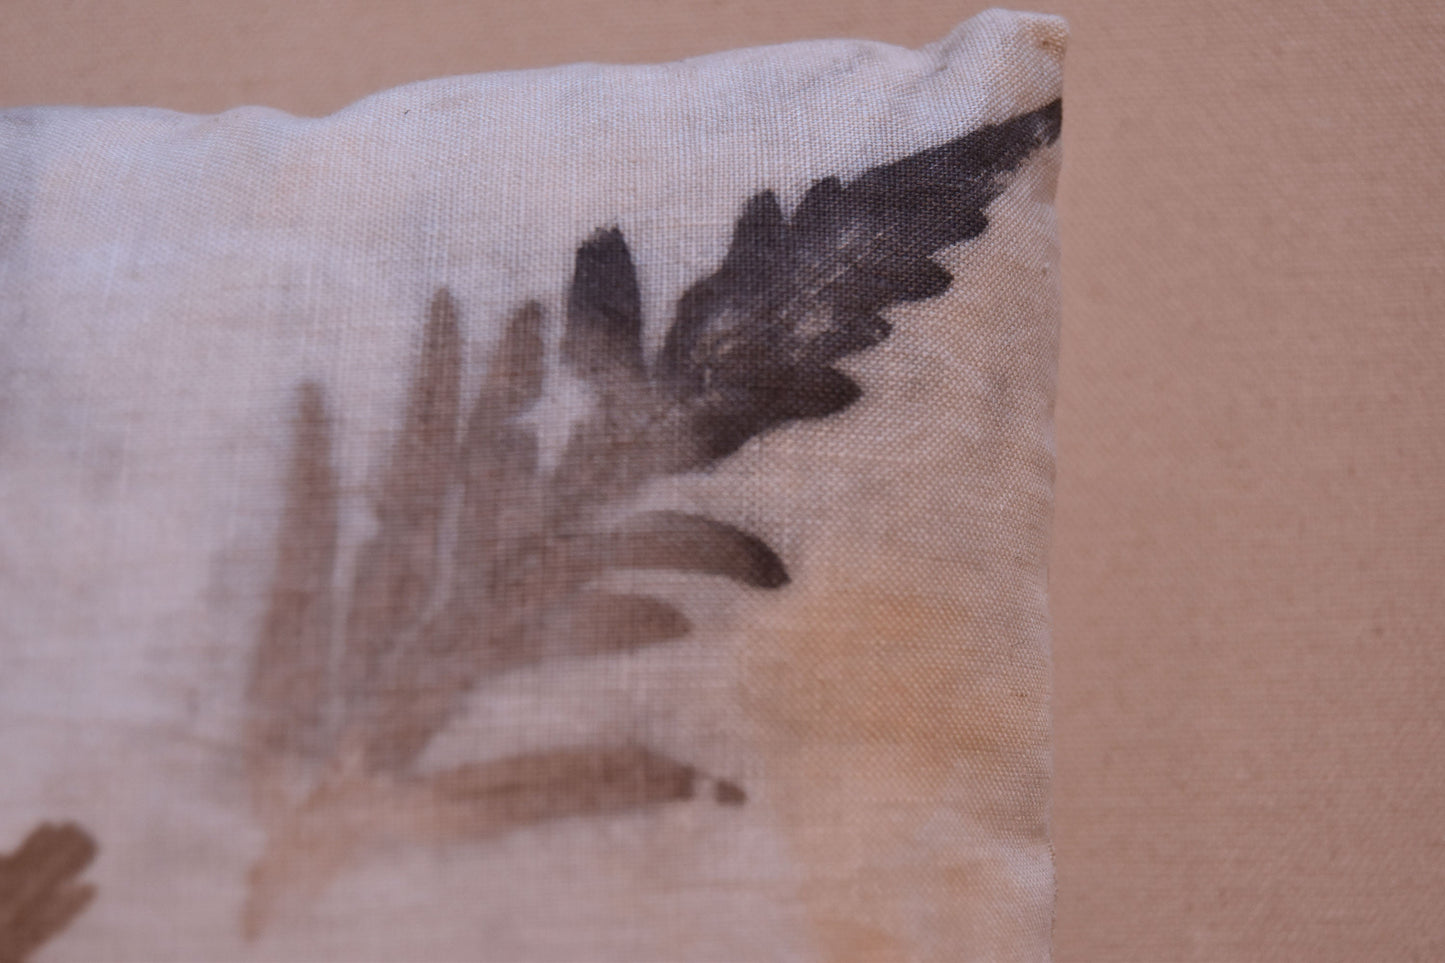 Tataki zome pillow- botanical print- organic textile